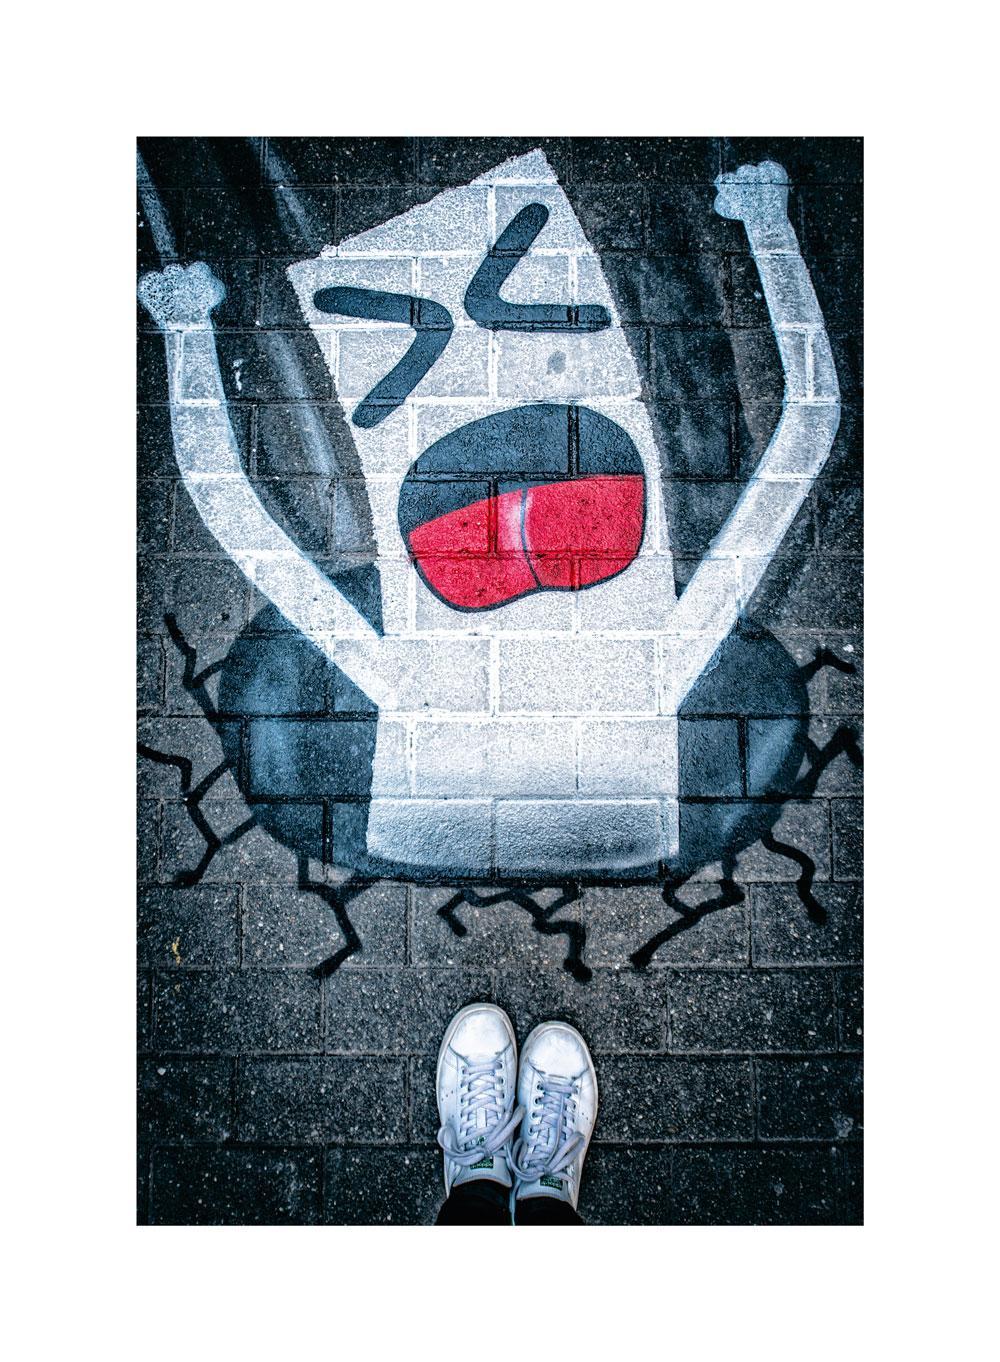 À deux reprises, le street artiste s'est amusé à ajouter des passages pour piétons dans les rues de Bruxelles, invitant à multiplier les flux plus lents dans une ville acquise aux logiques automobiles. Au 45 rue de Barchon, une bande blanche disparait dans un trou noir.